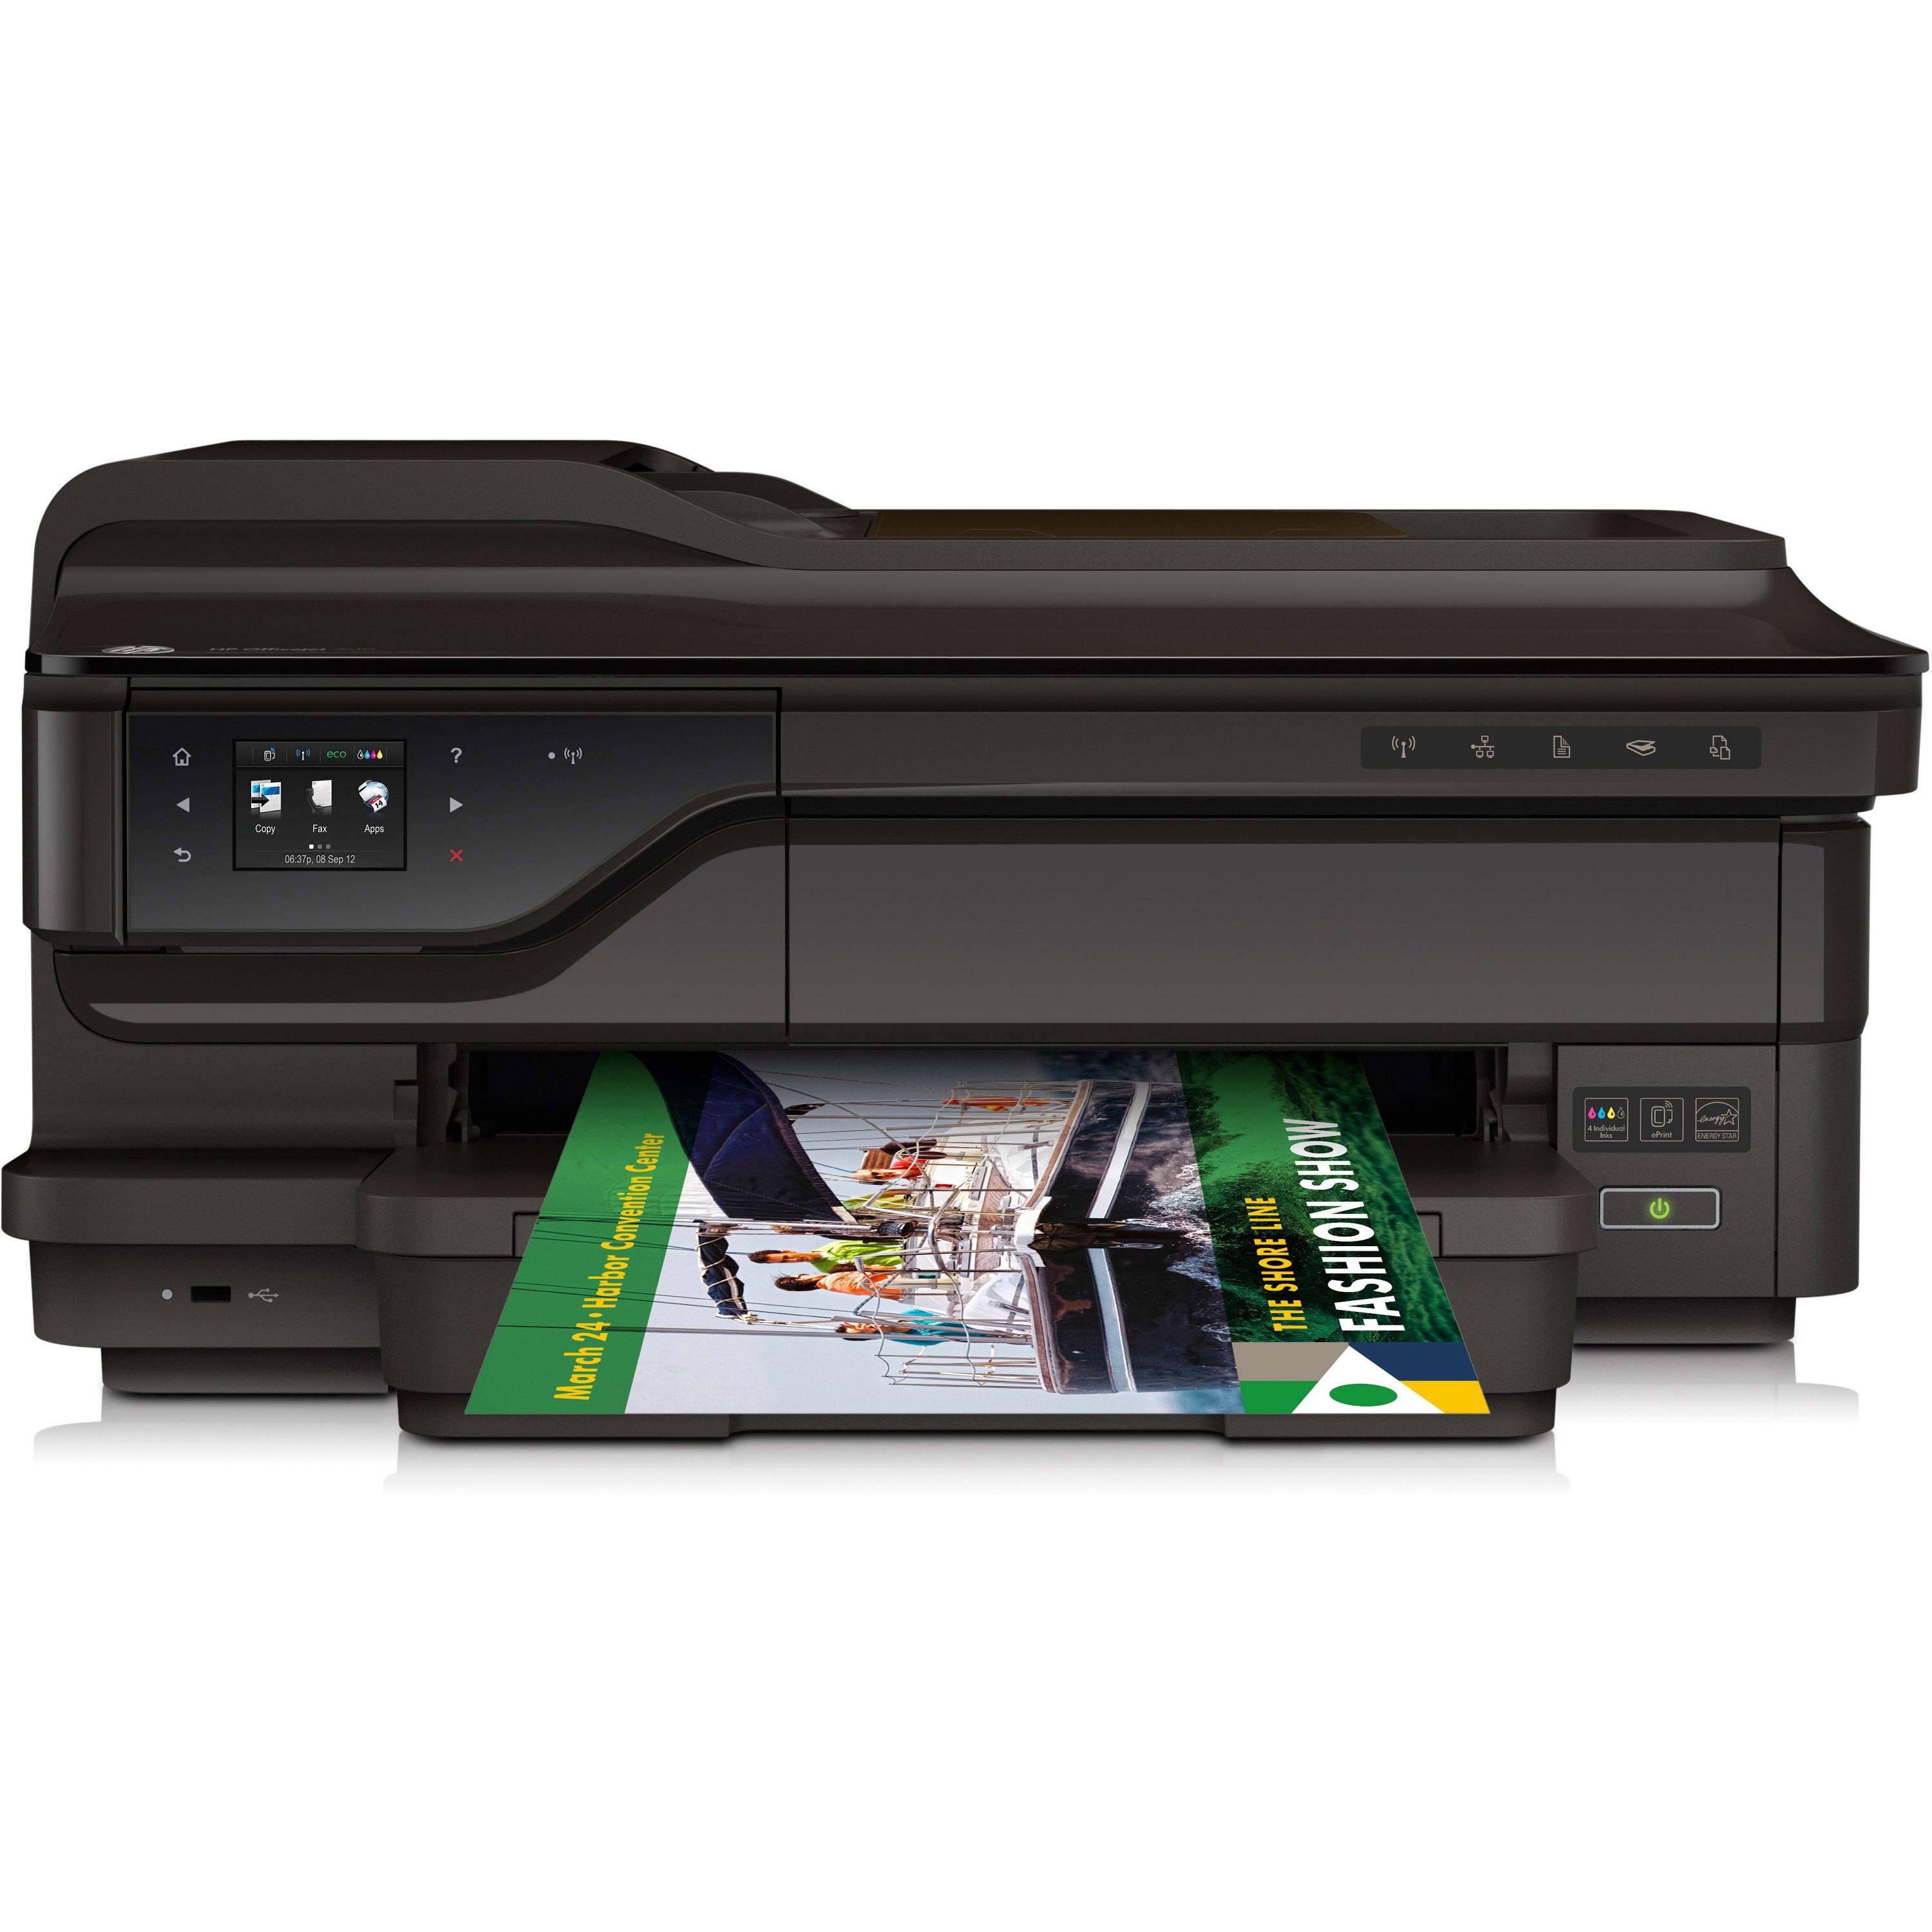 Hp Officejet 7612 Wide Format A3 Inkjet Mfc Printer G1x85a Ascent Nz